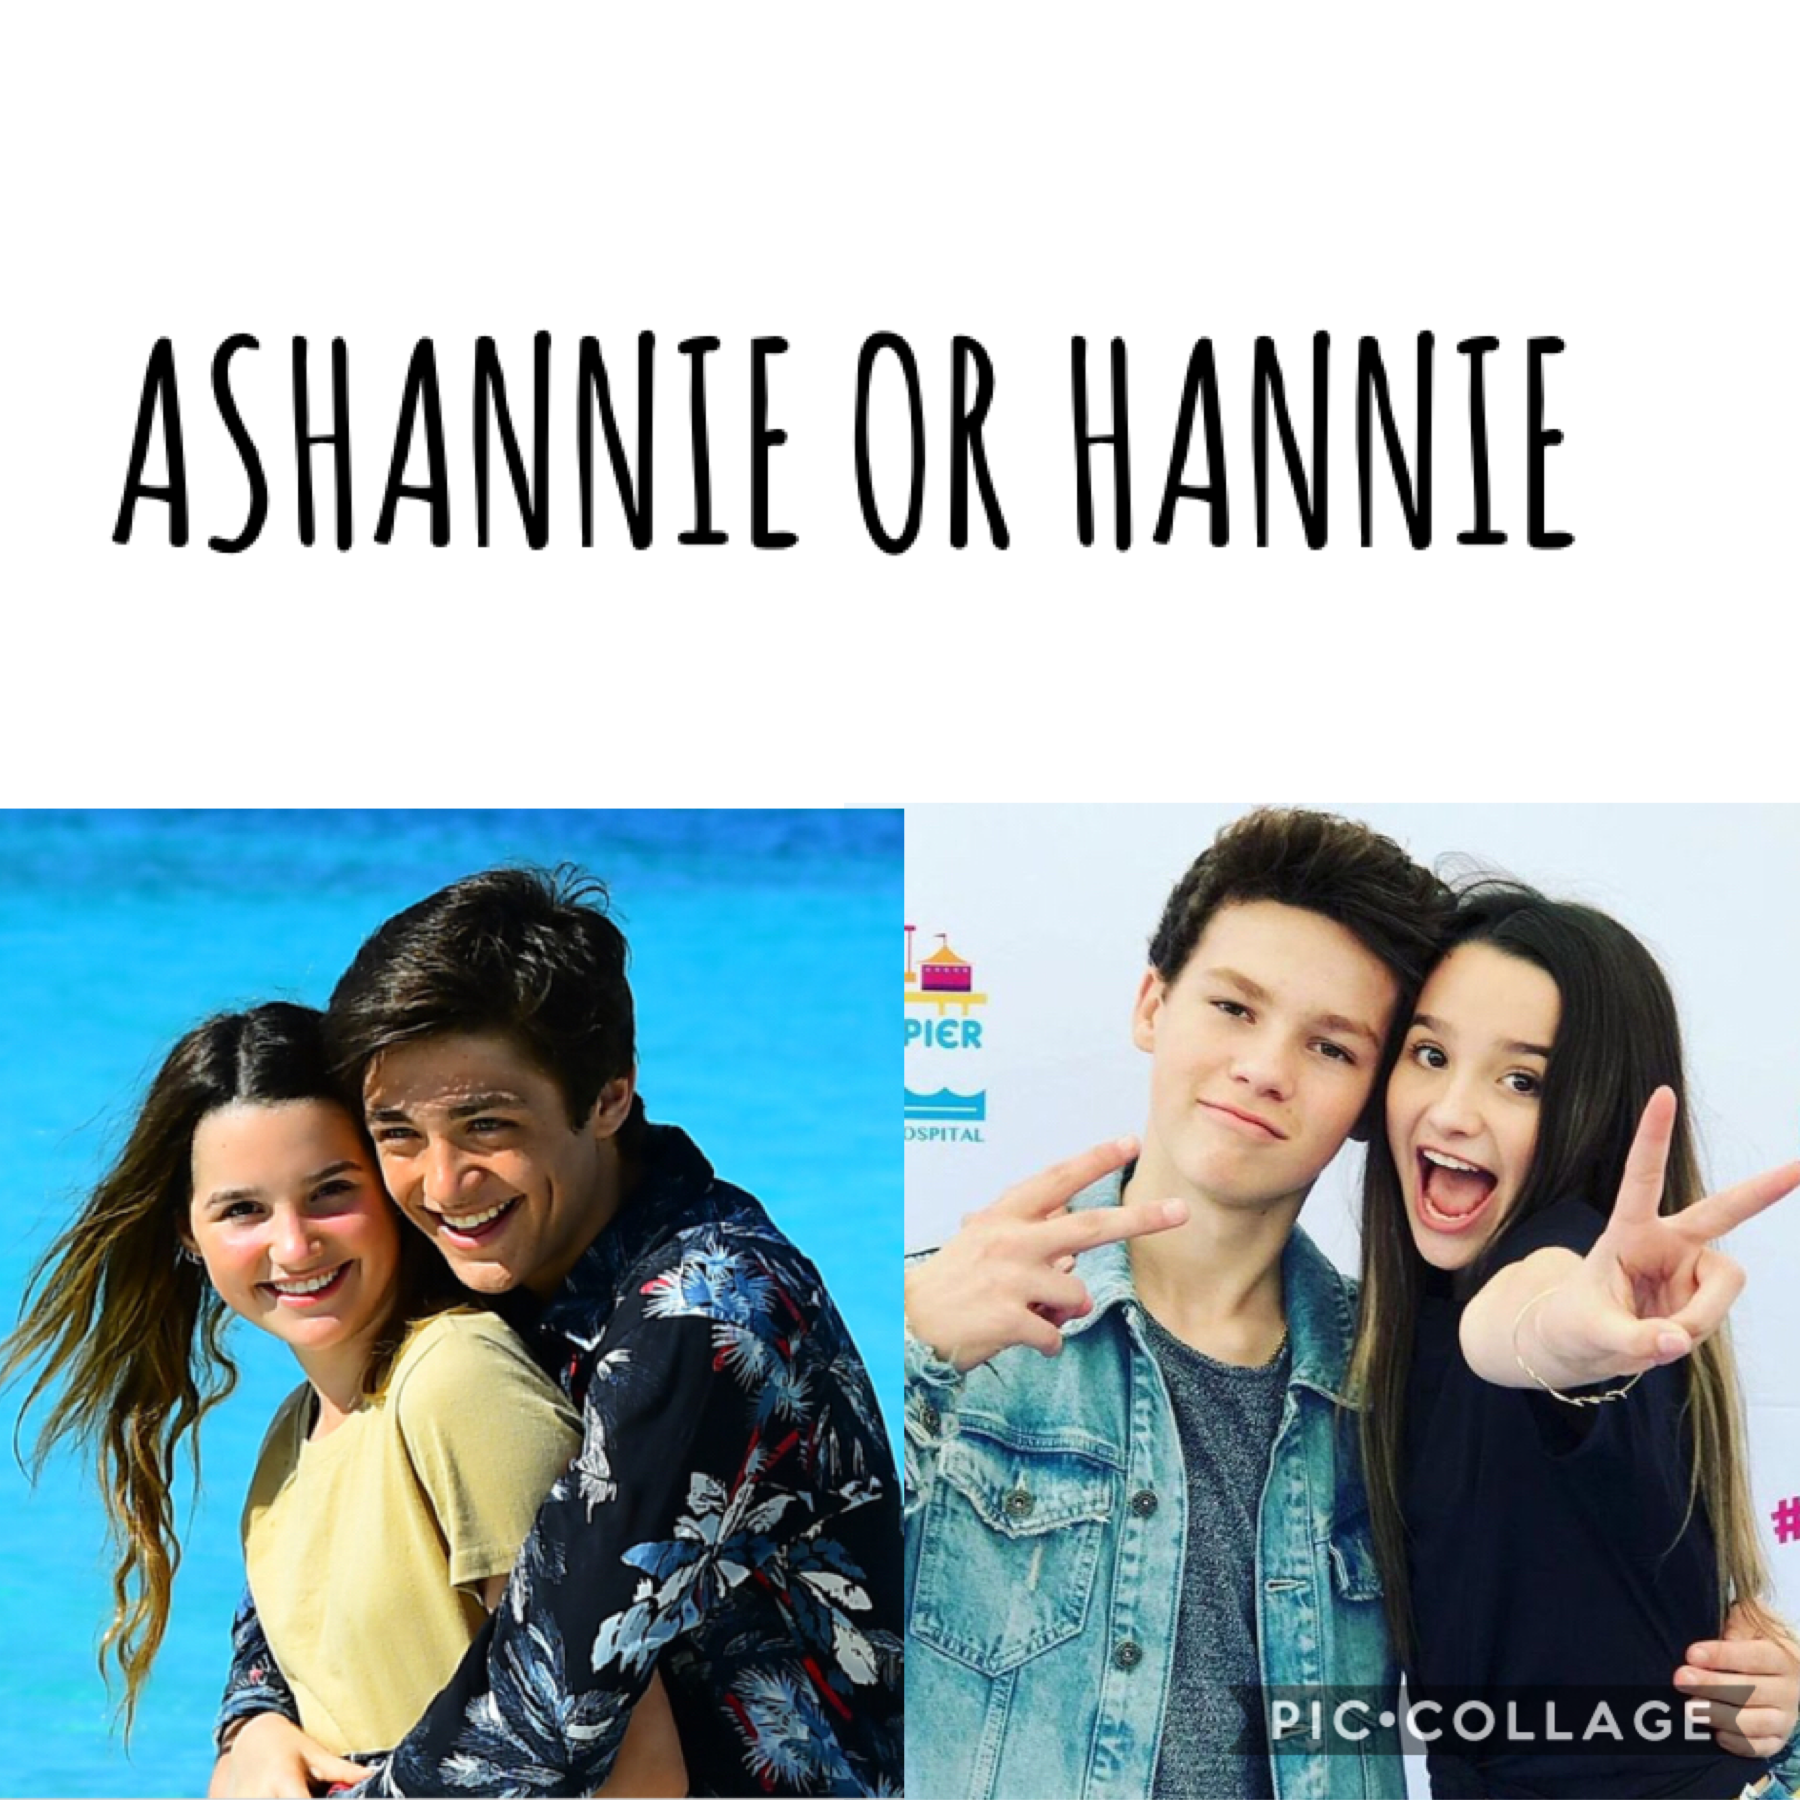 Ashannie or hannie?
 
ASHANNIE FOR LIFEEE🤩😂🖤